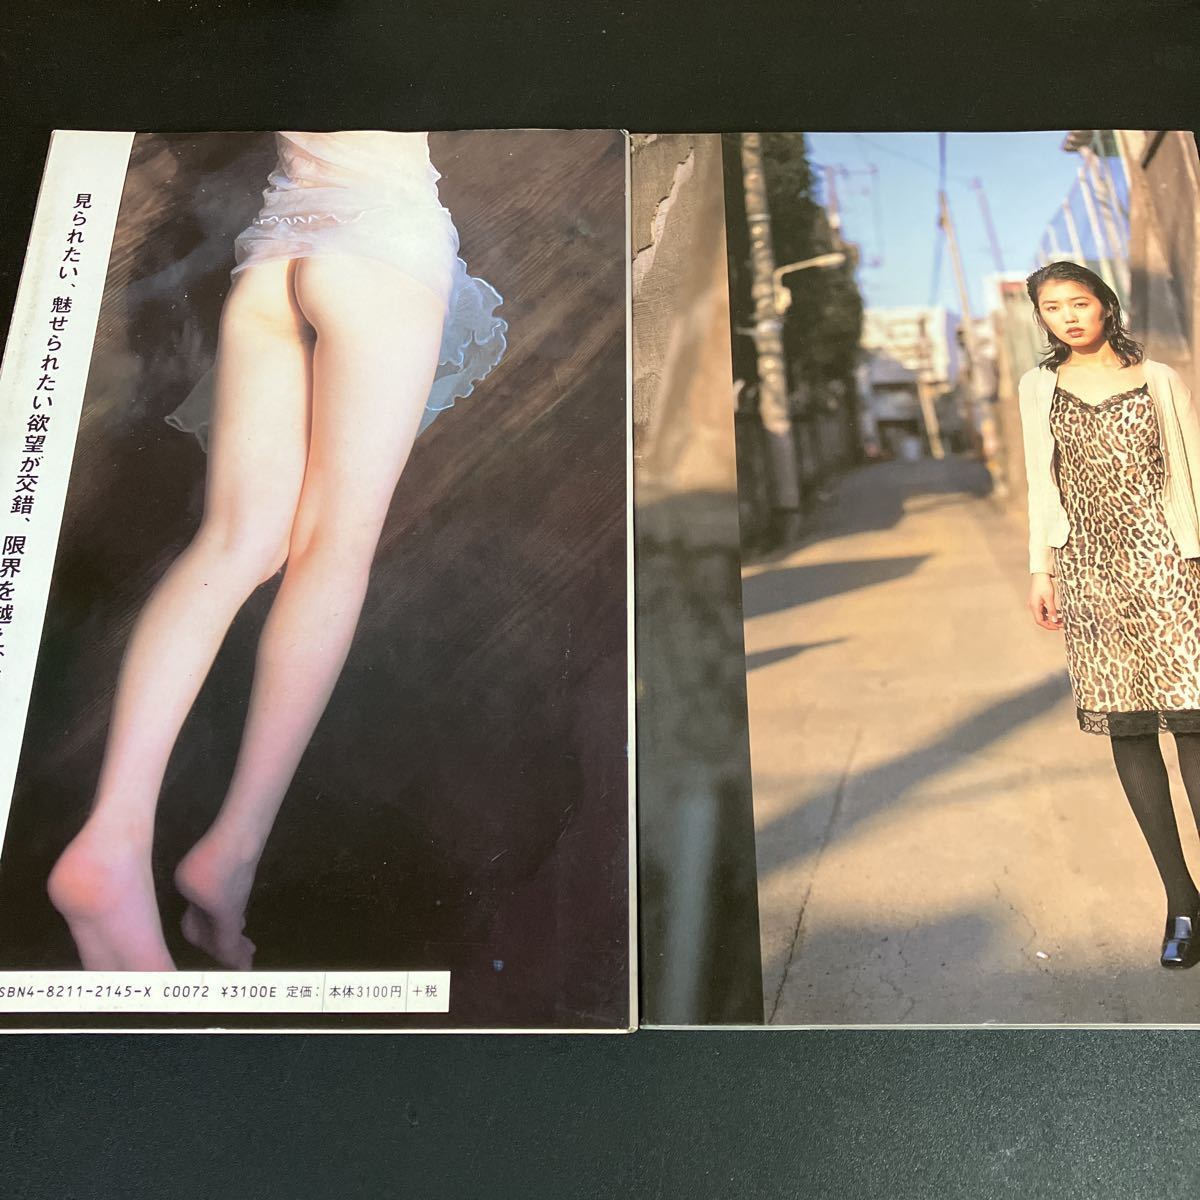 23-9-26[ Kiuchi Miho photoalbum return .] Ran Jerry hand bla is mi. Bunkasha [ anonymity delivery ]